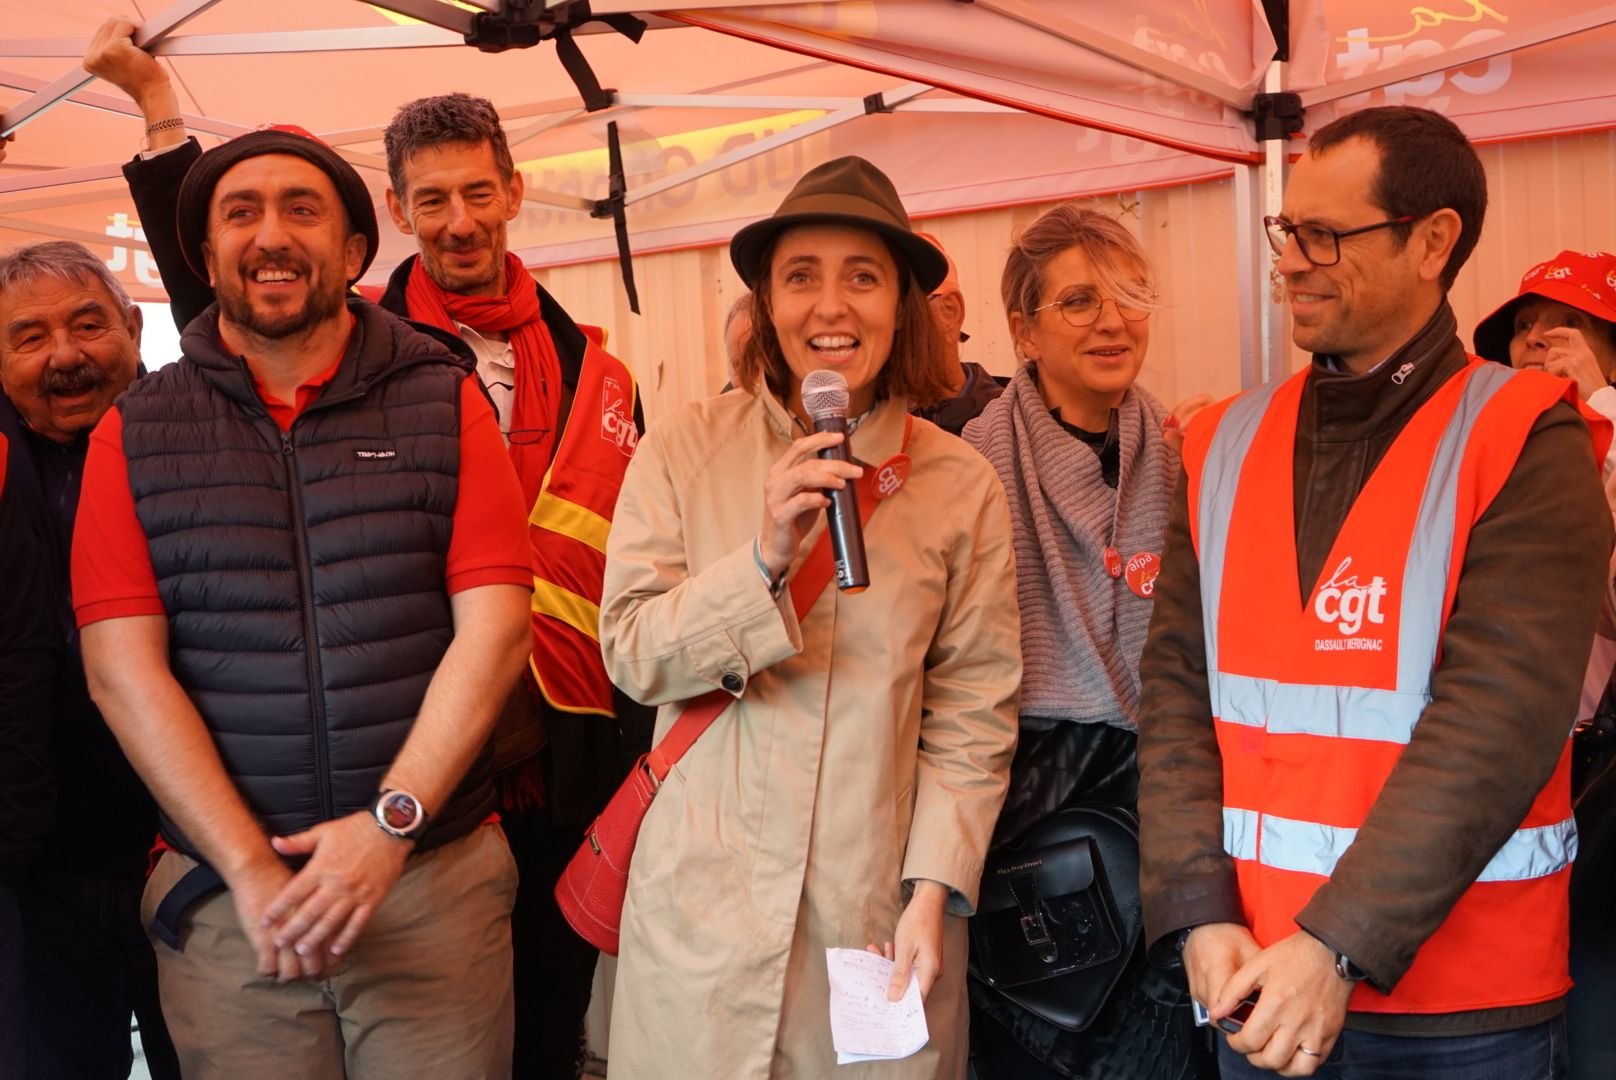 Sophie Binet, numéro un de la CGT, était à Bordeaux ce vendredi midi pour soutenir les salariés de l'usine MMTB Blanquefort. LP/Klervi Le Cozic